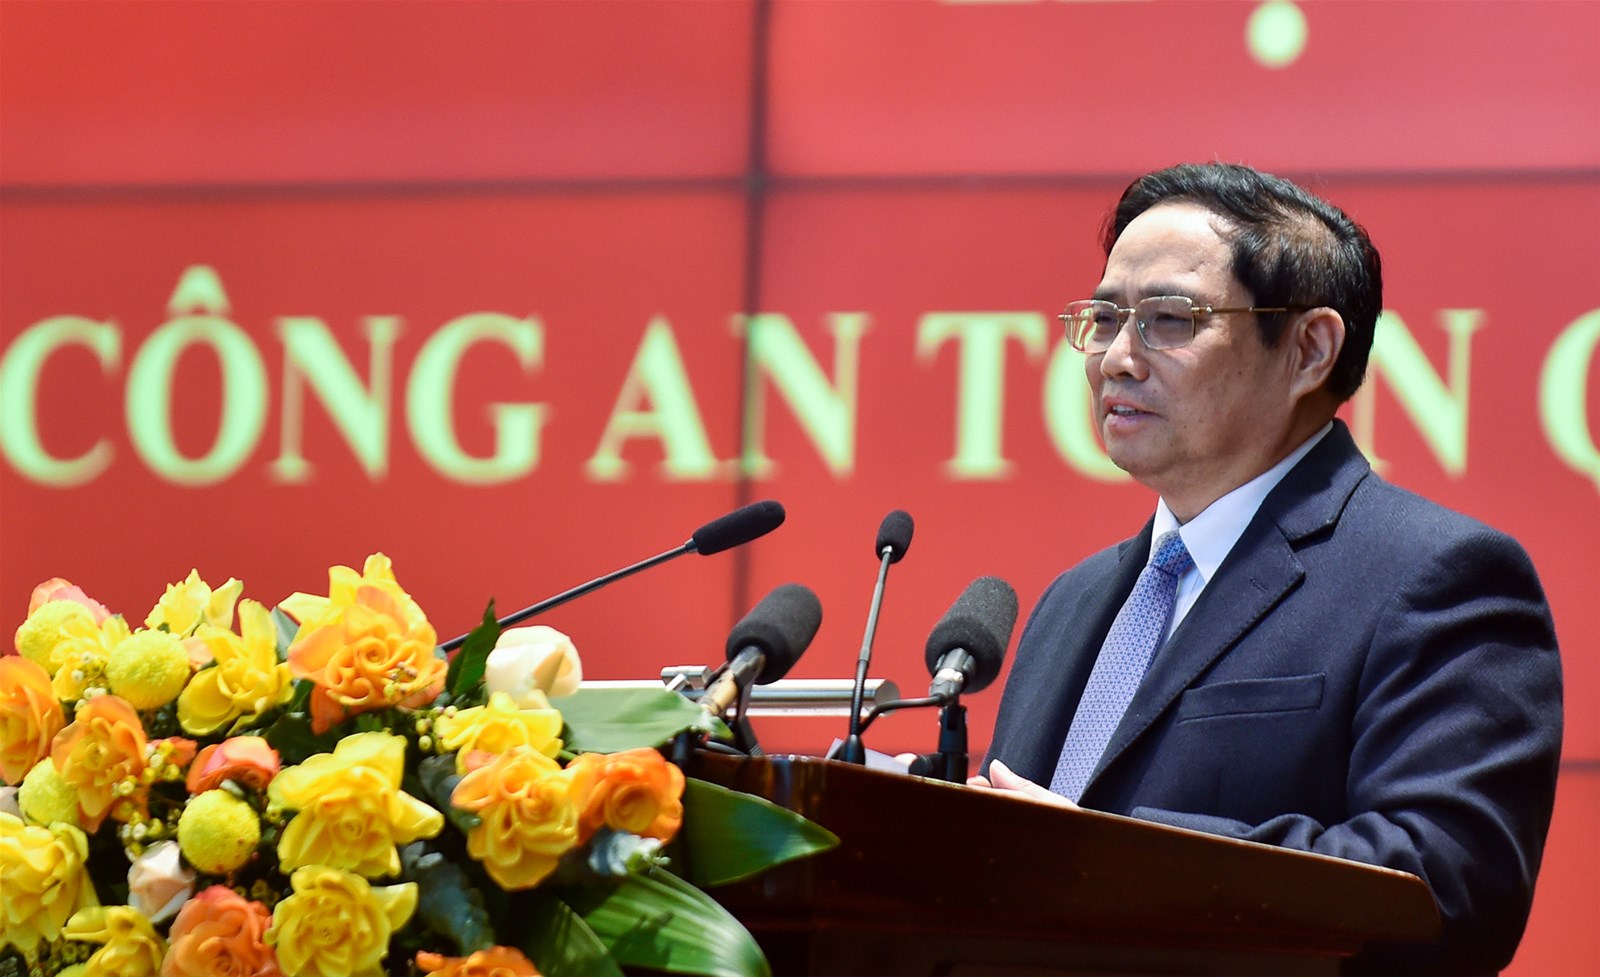 Thủ tướng Chính phủ Phạm Minh Chính: Đây mạnh xây dựng lực lượng Công an nhân dân trong sạch, vững mạnh